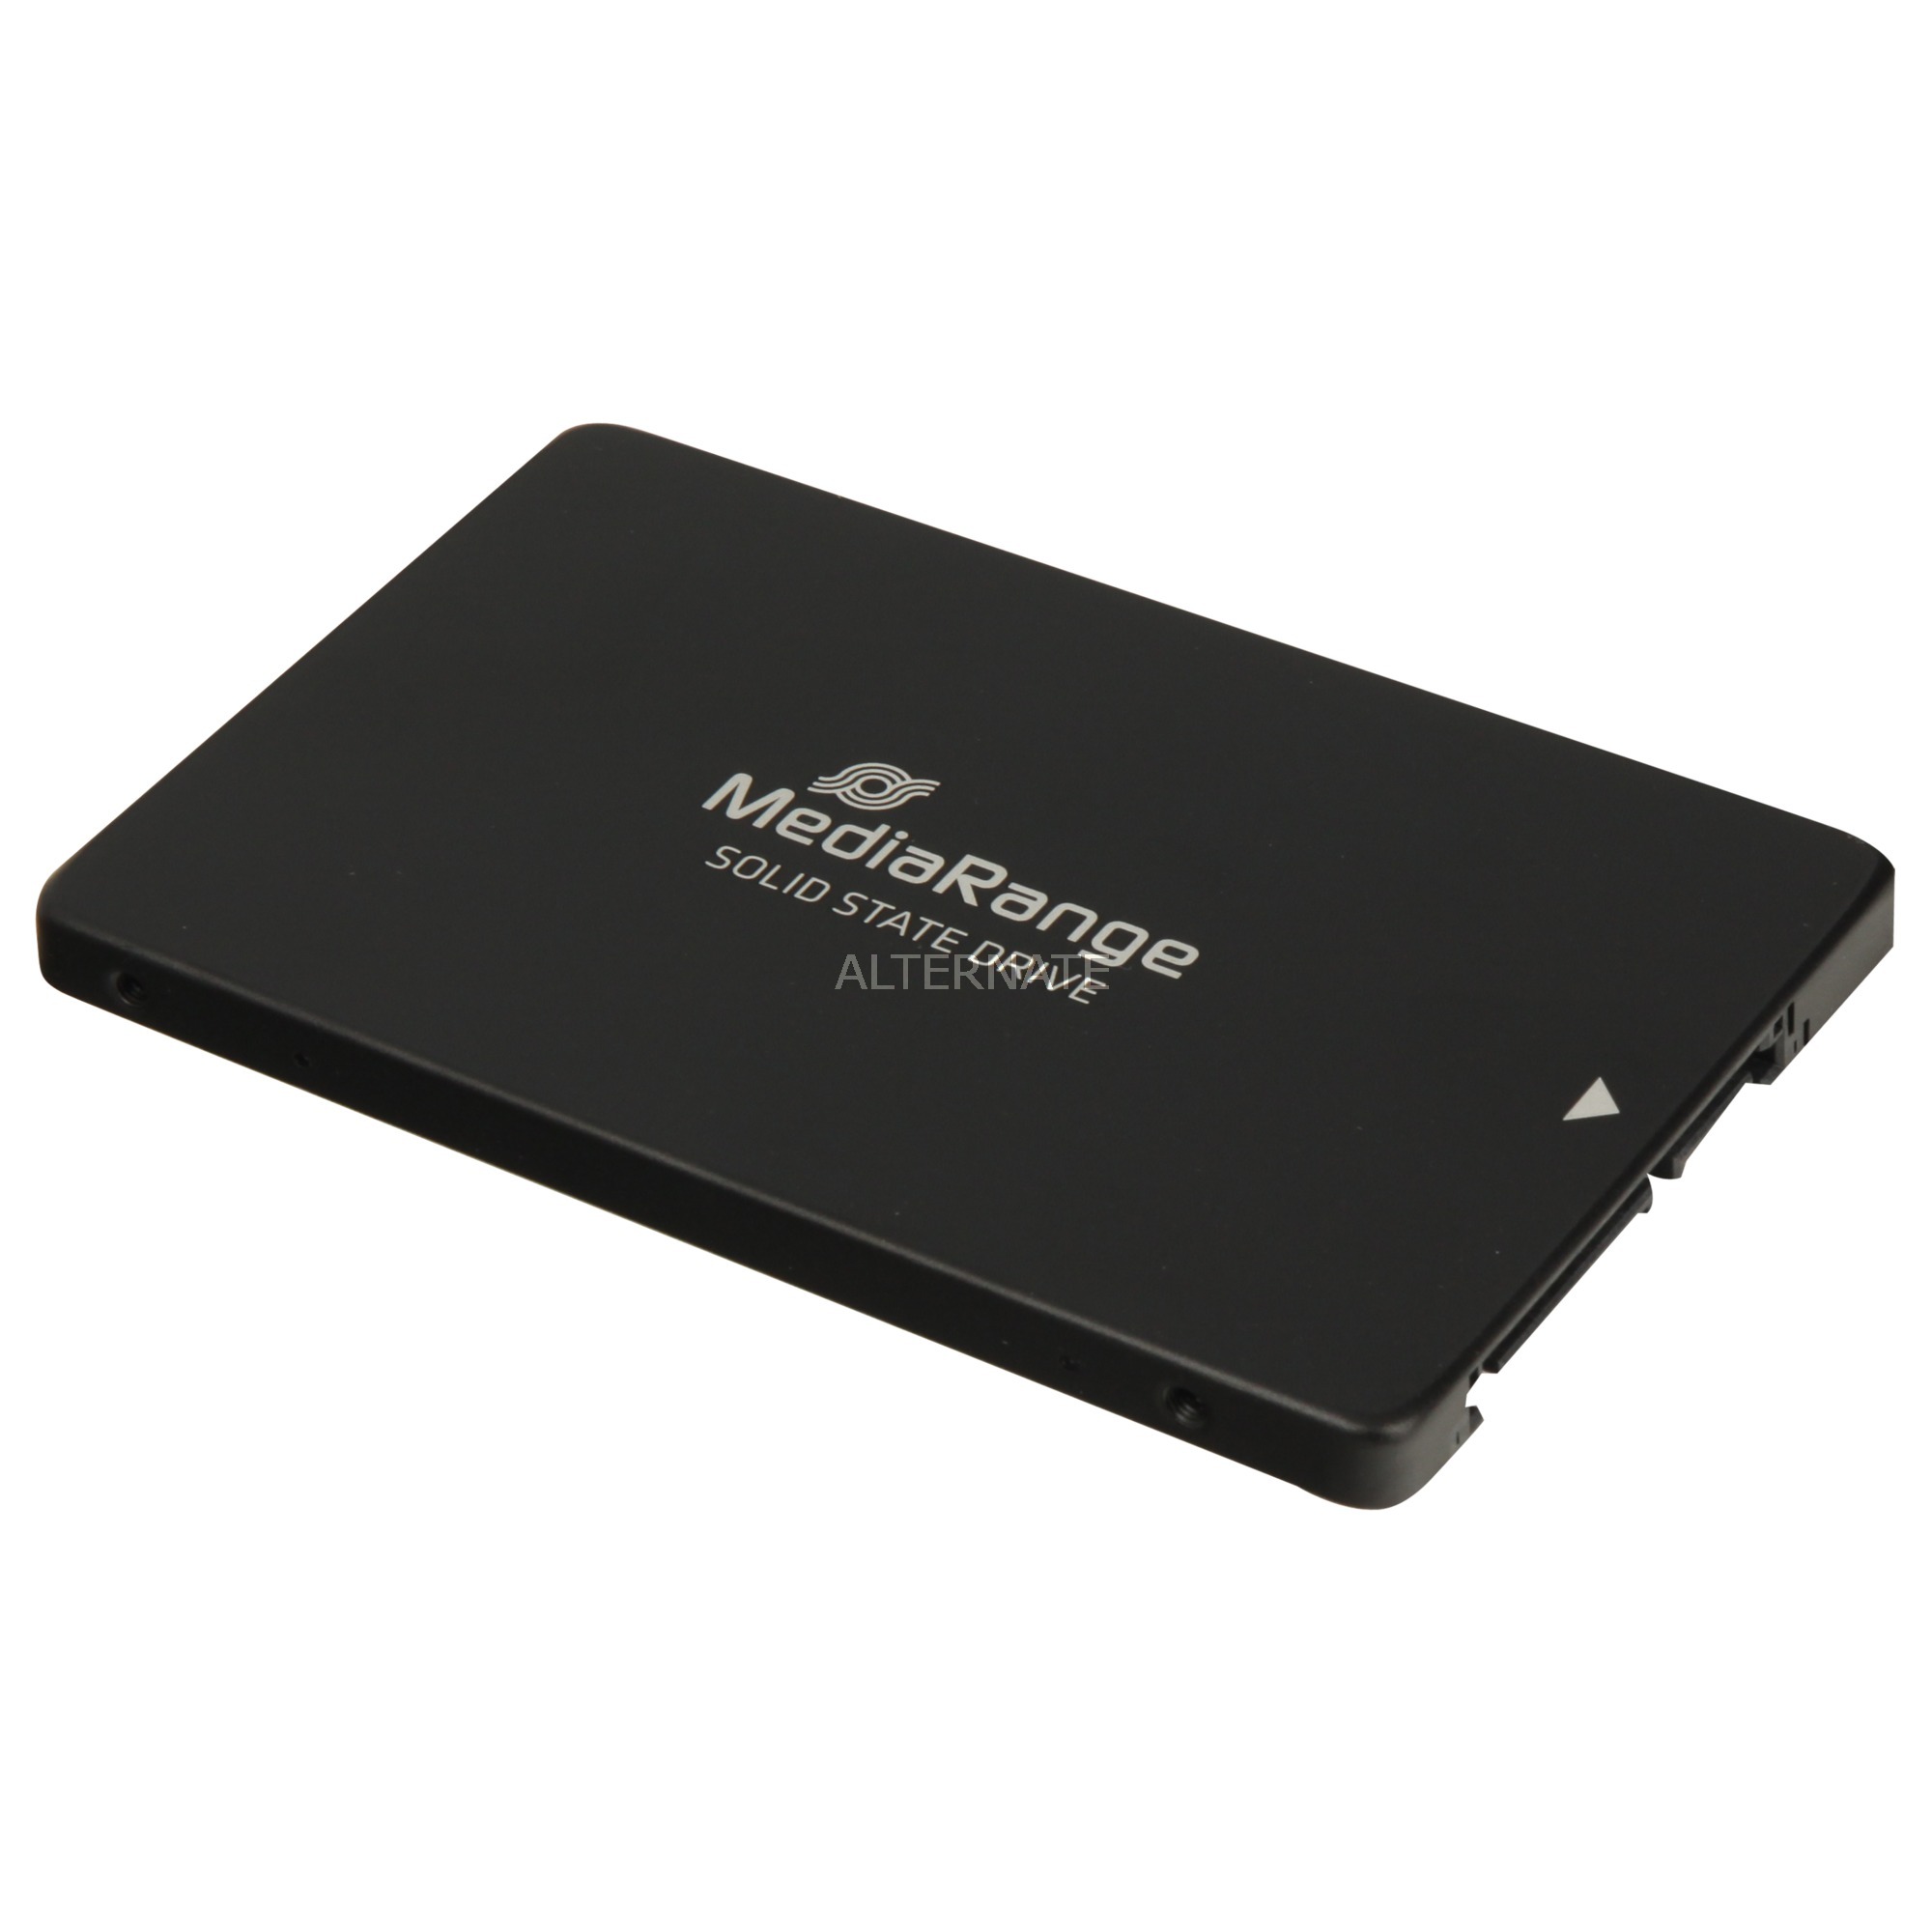 MR1003 urządzenie SSD 480 GB druga generacja szeregowej magistrali komputerowej (serial ATA II), Serial ATA III 2.5", Dysk SSD